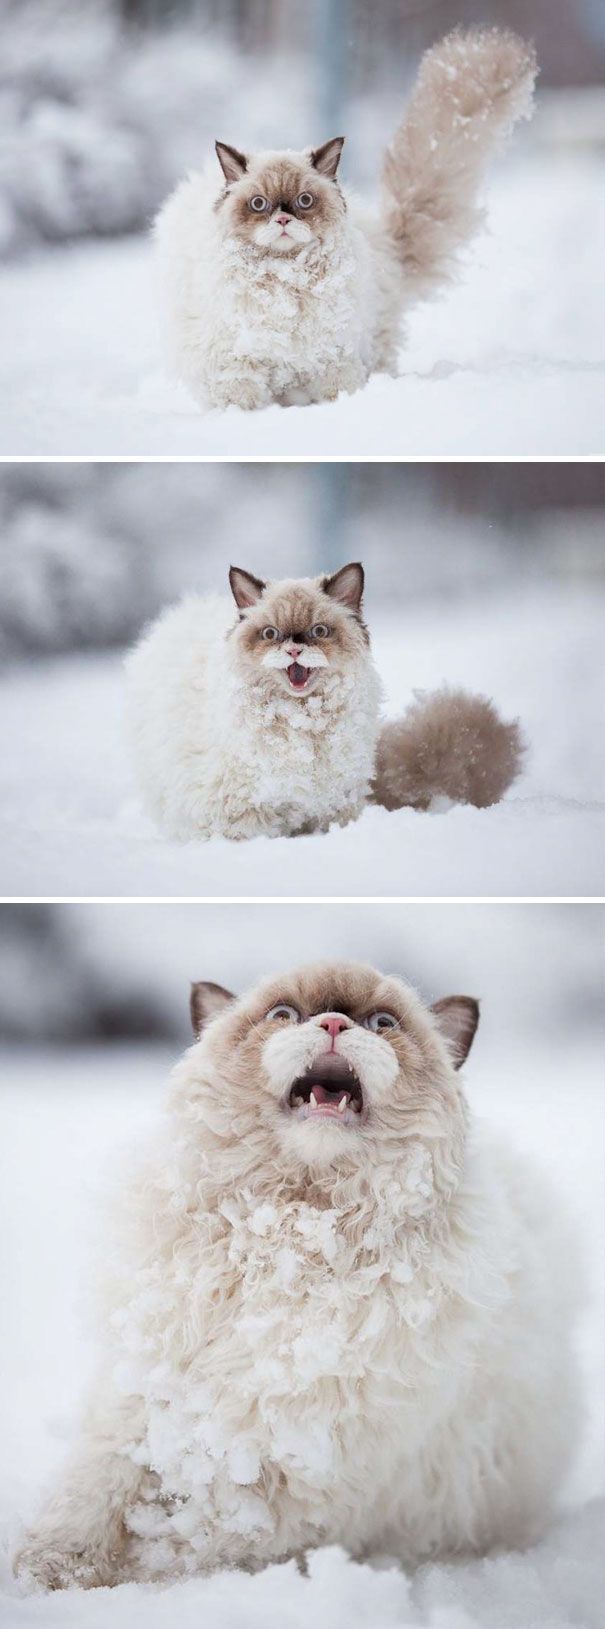 Кот не очень обрадовался снежной погоде.